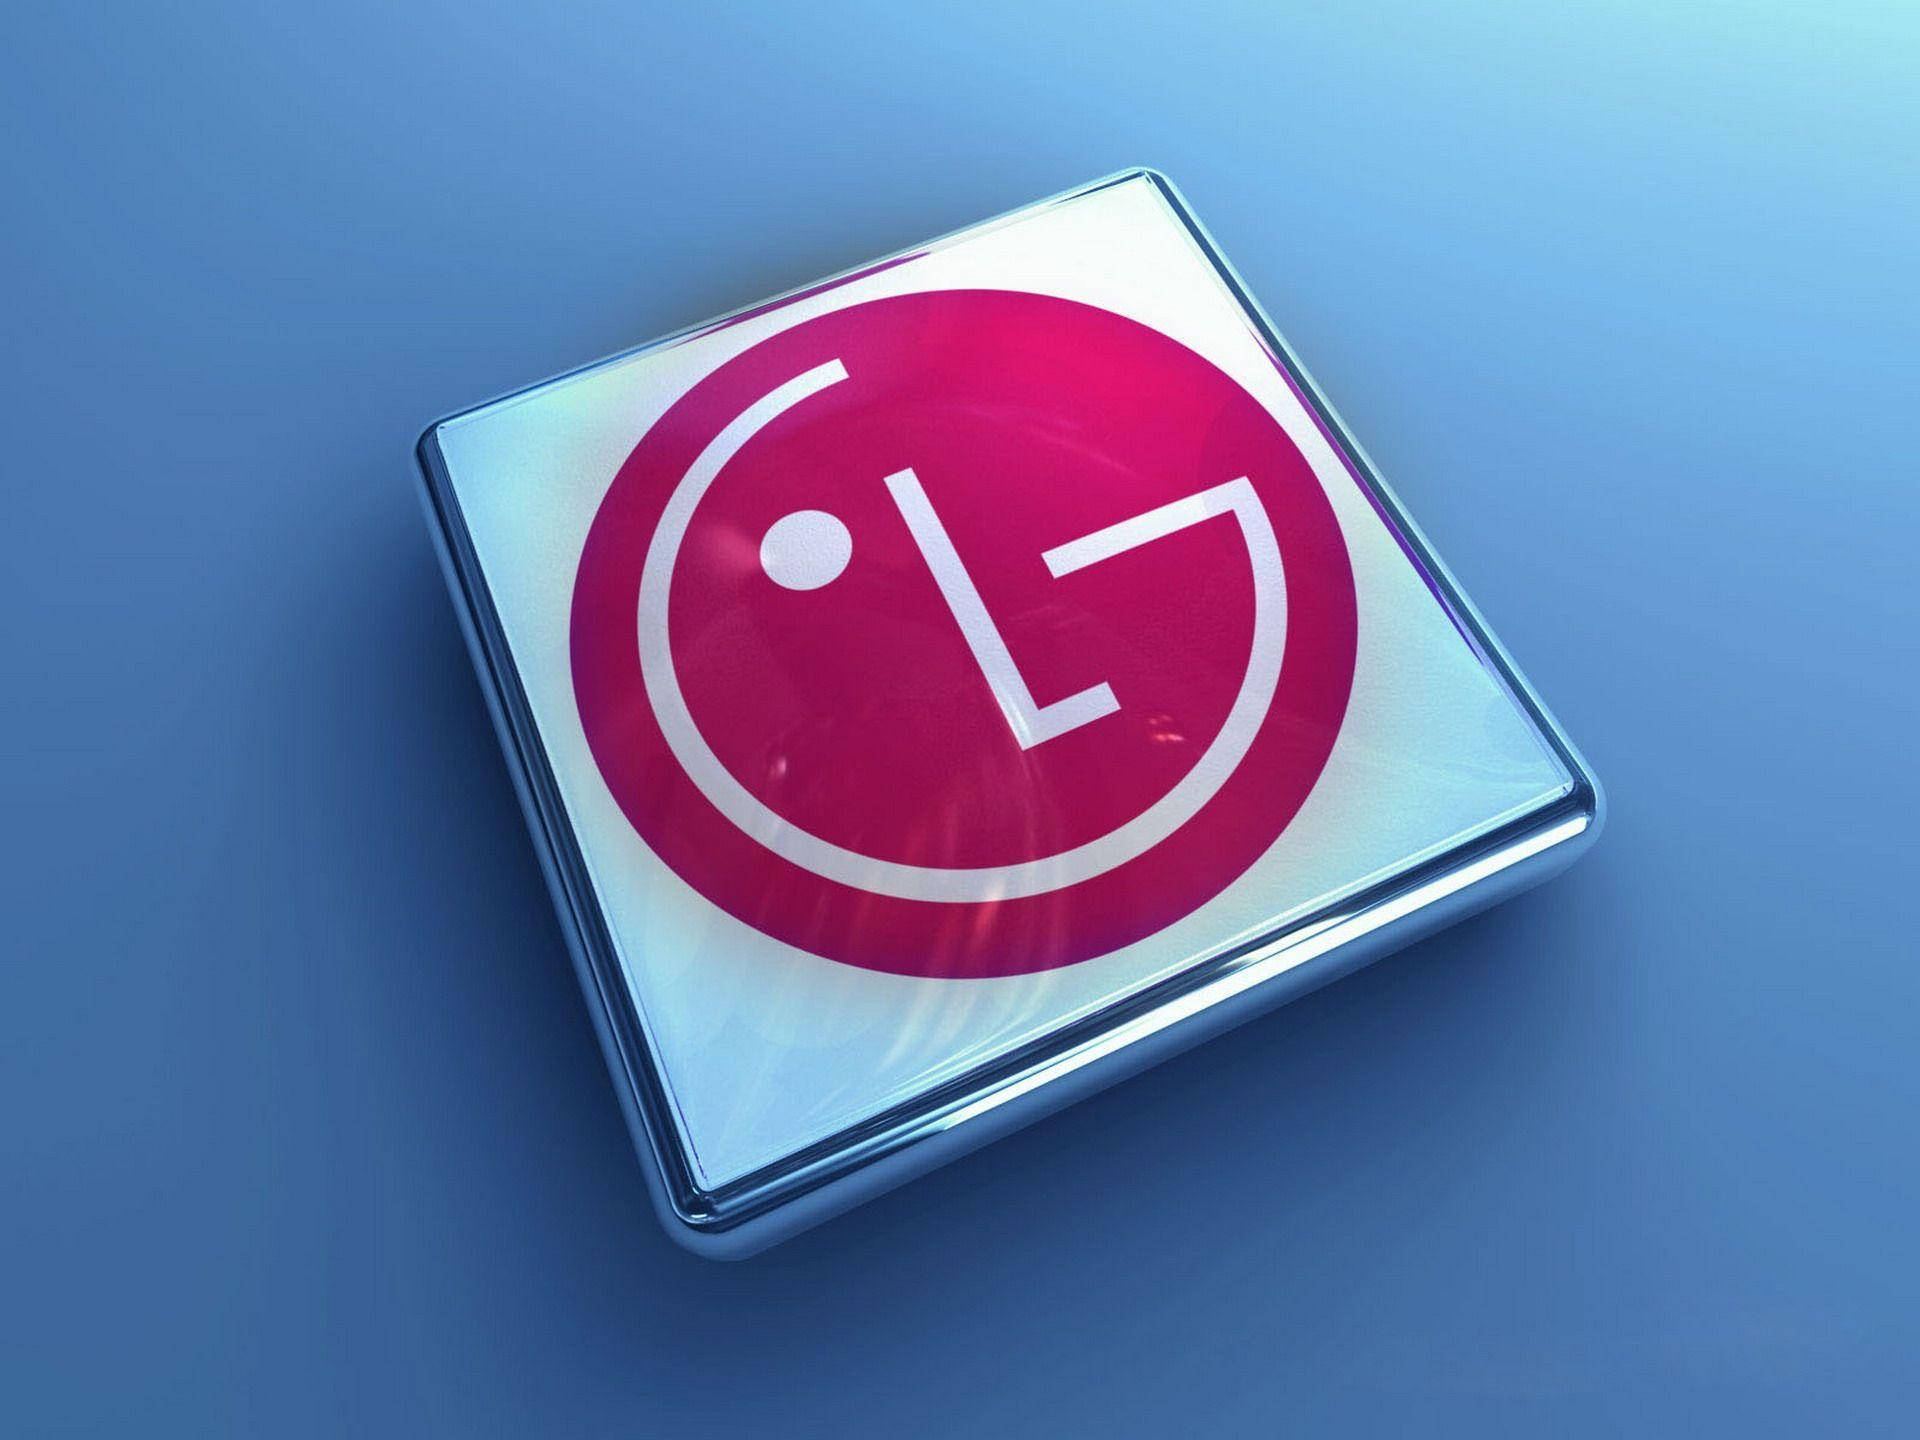 lg electronics logo